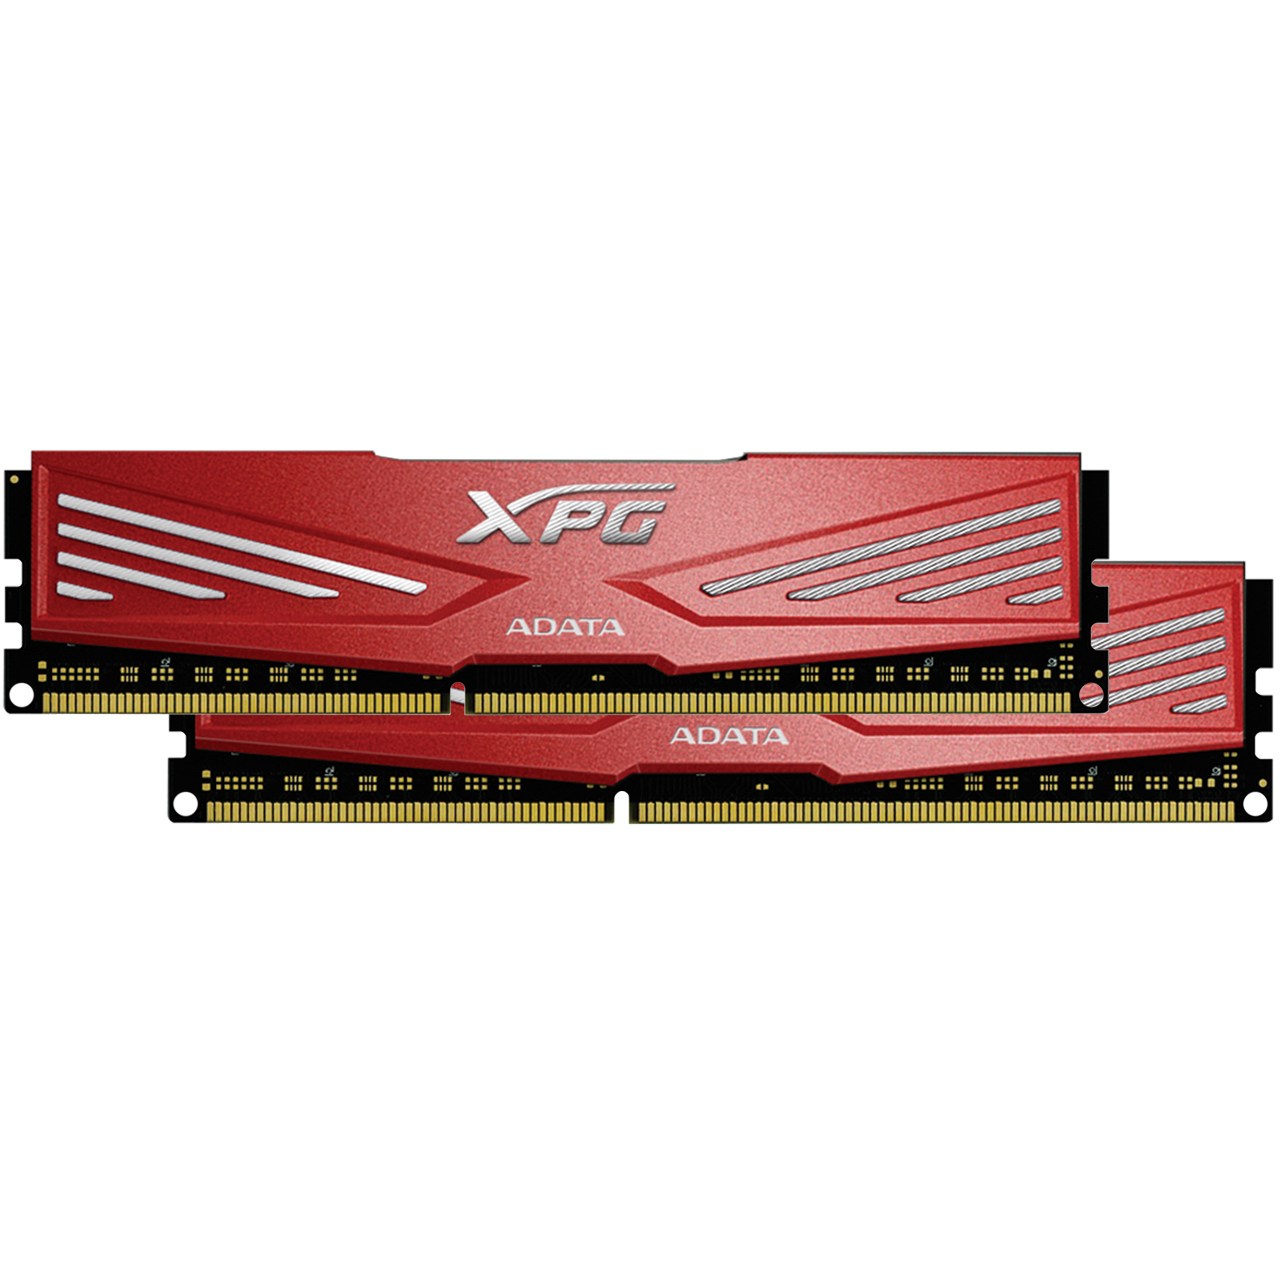 رم دسکتاپ DDR3 دو کاناله 2133 مگاهرتز CL10 ای دیتا مدل XPG V1 ظرفیت 16 گیگابایت